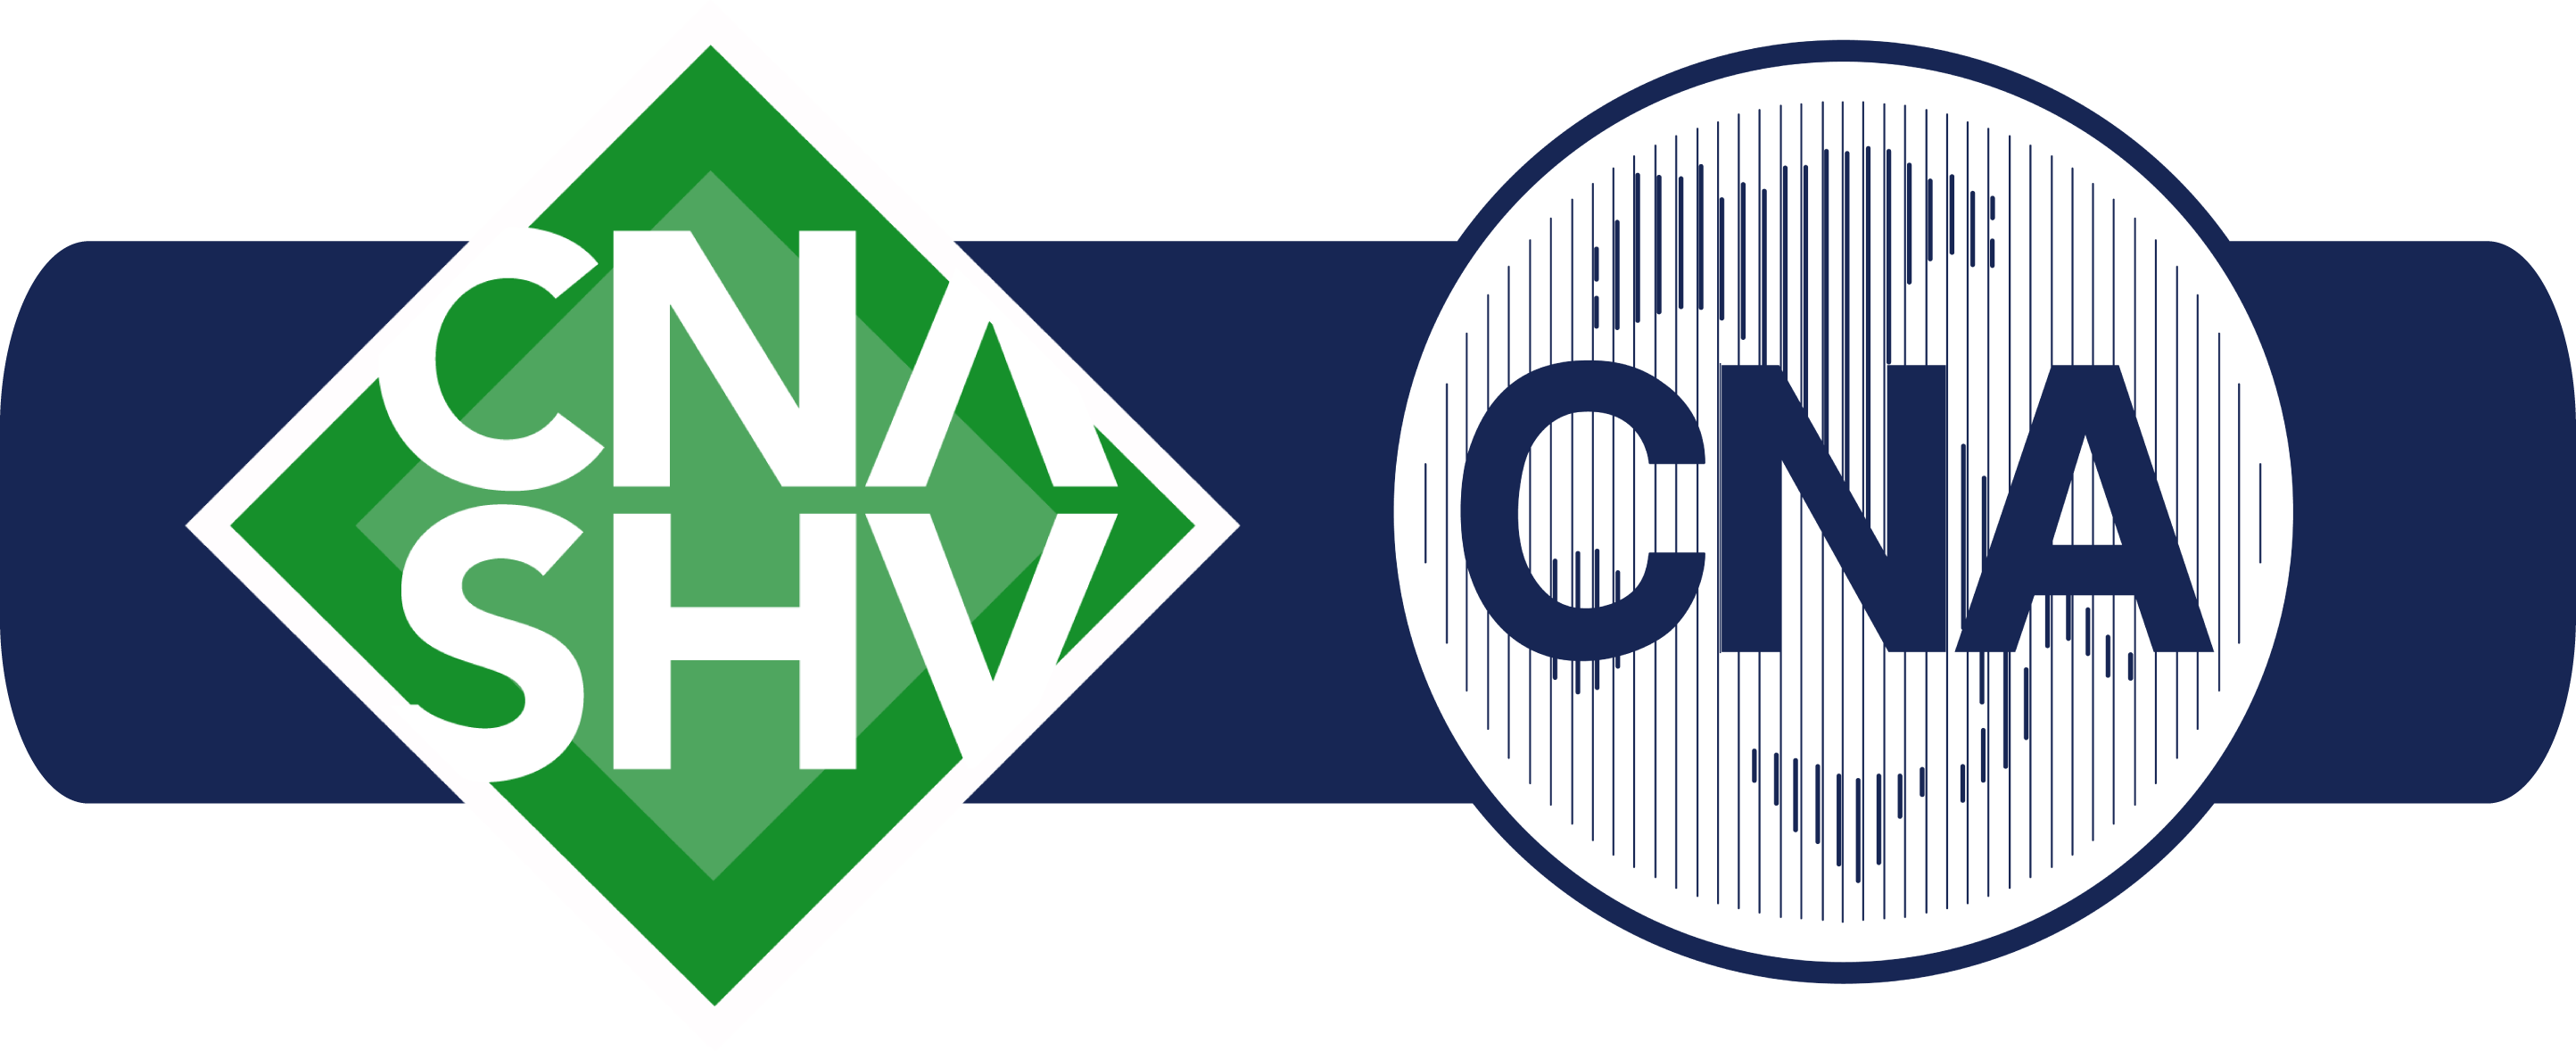 CNASHV_logo_2017BLUE.png